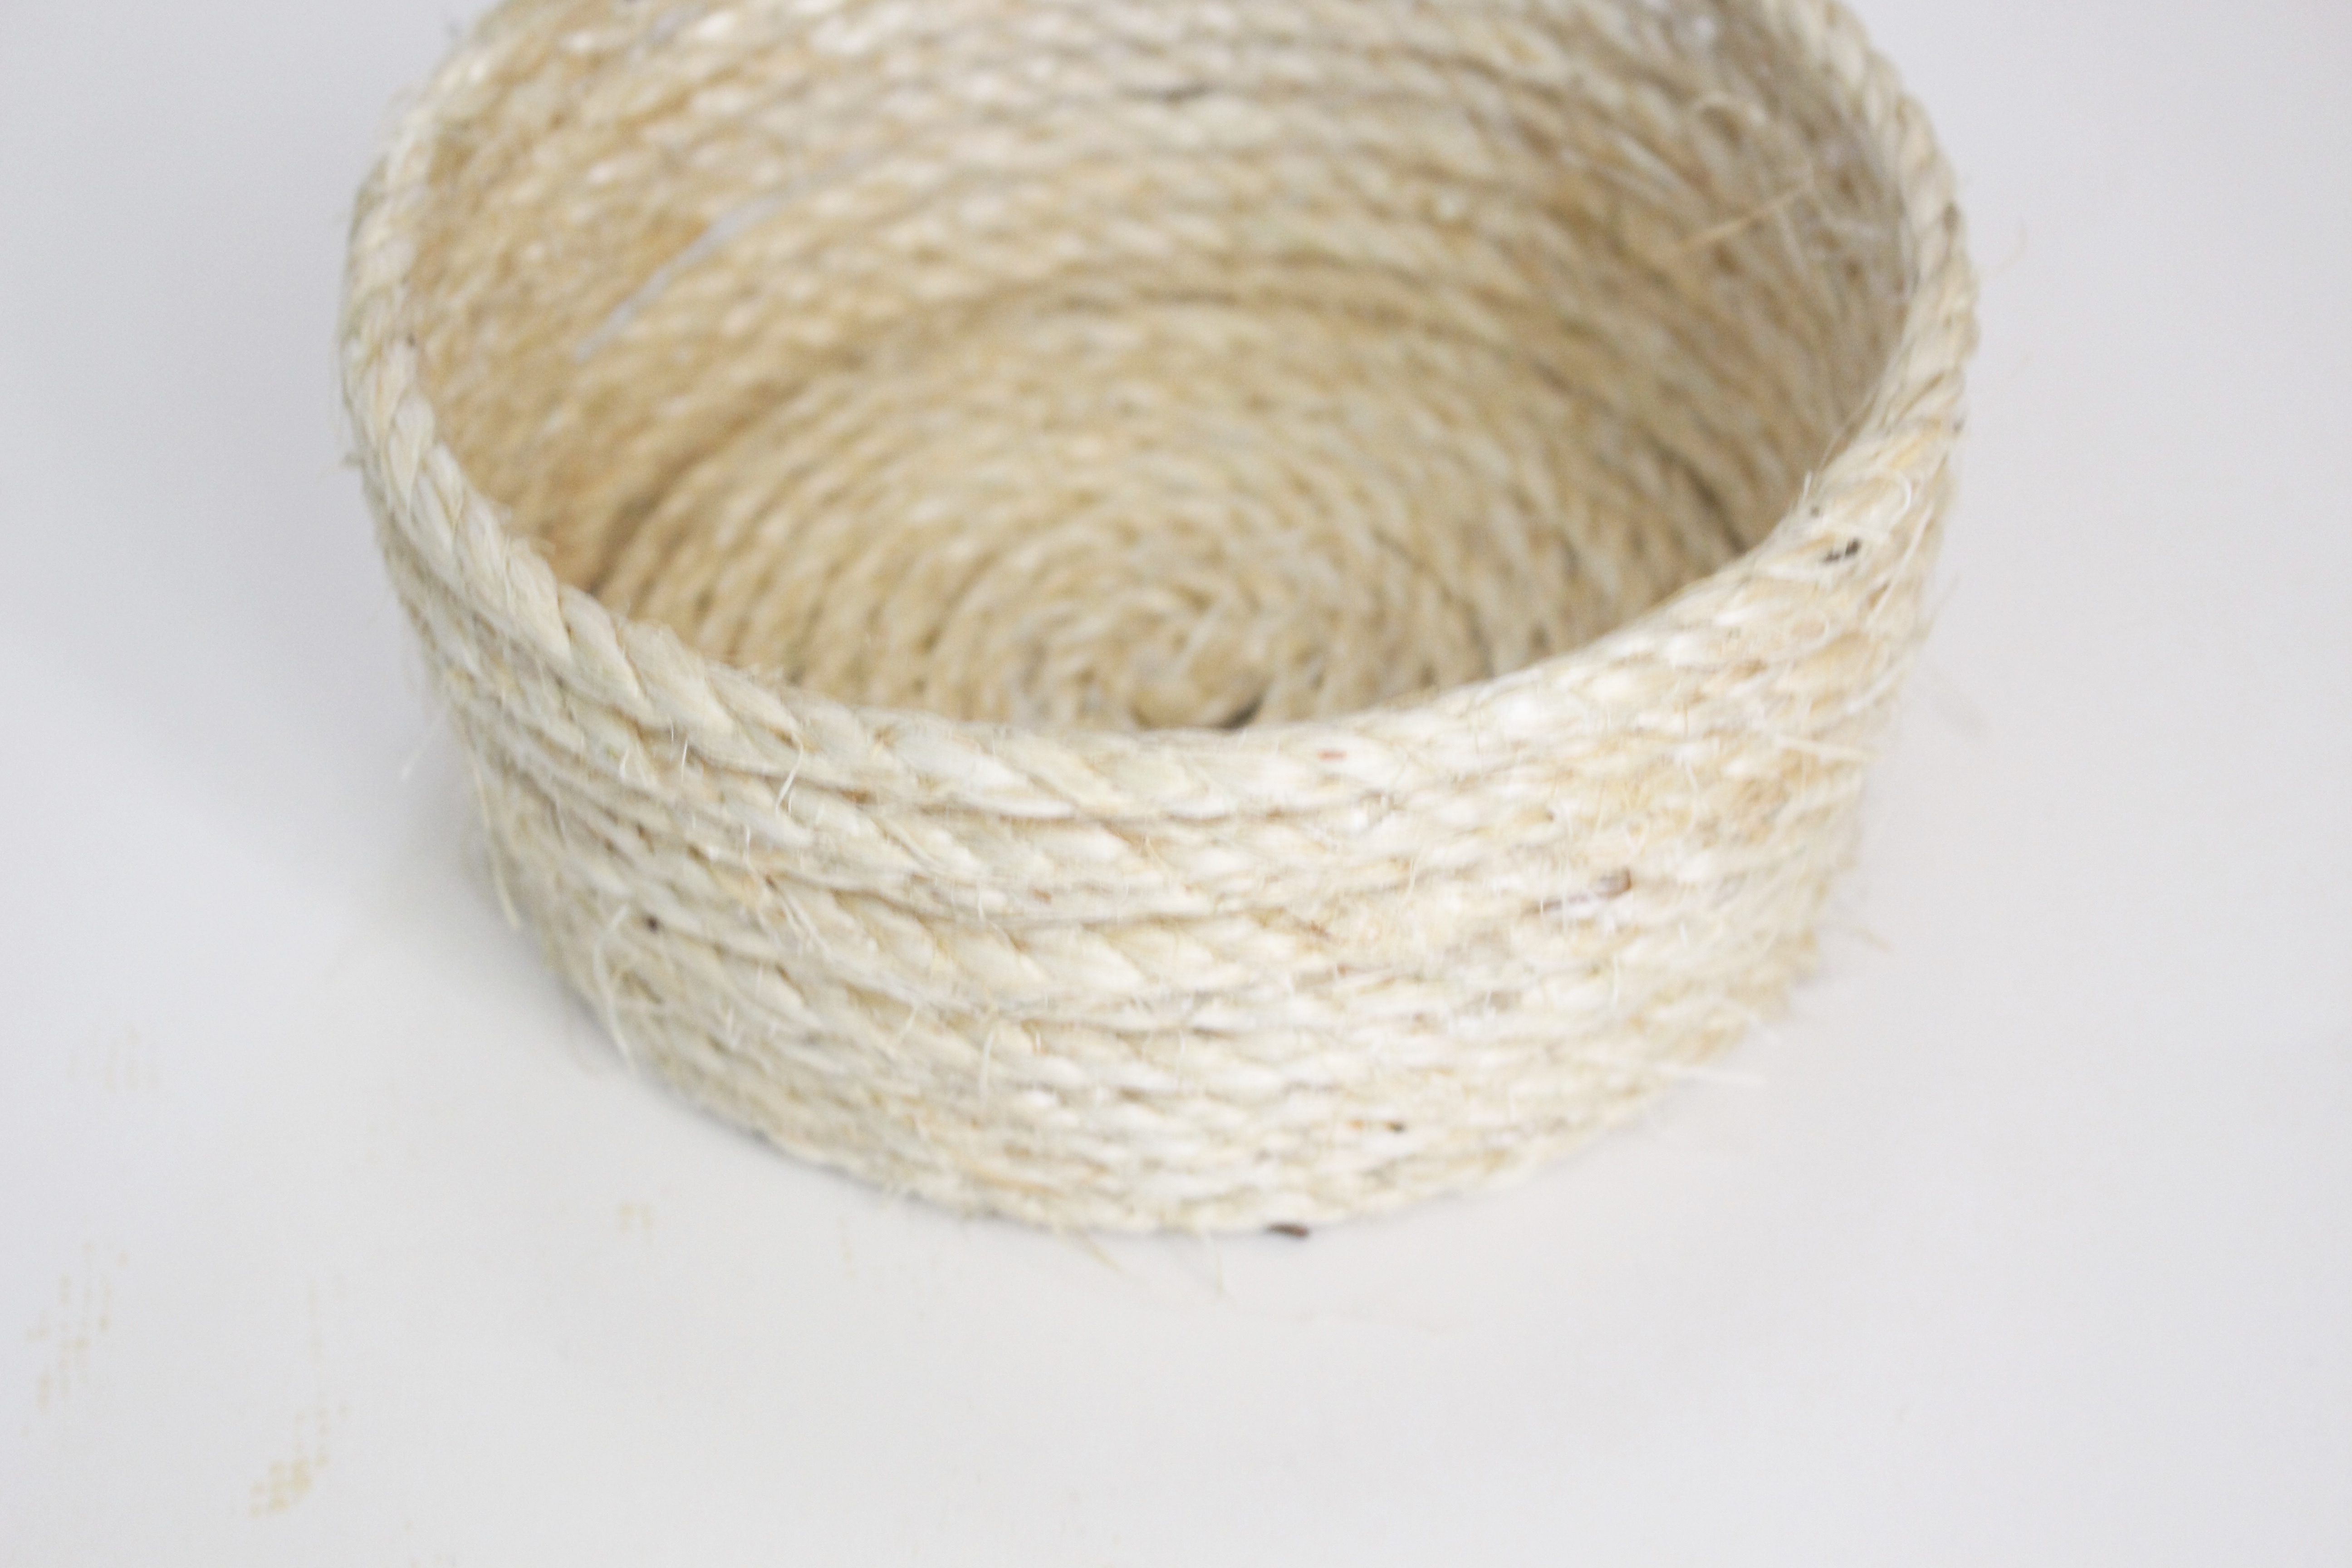 Sisal Rope Basket with Tassels- DIY rope projects- how to make a rope basket- how to make tassels- crafts- rope- DIY